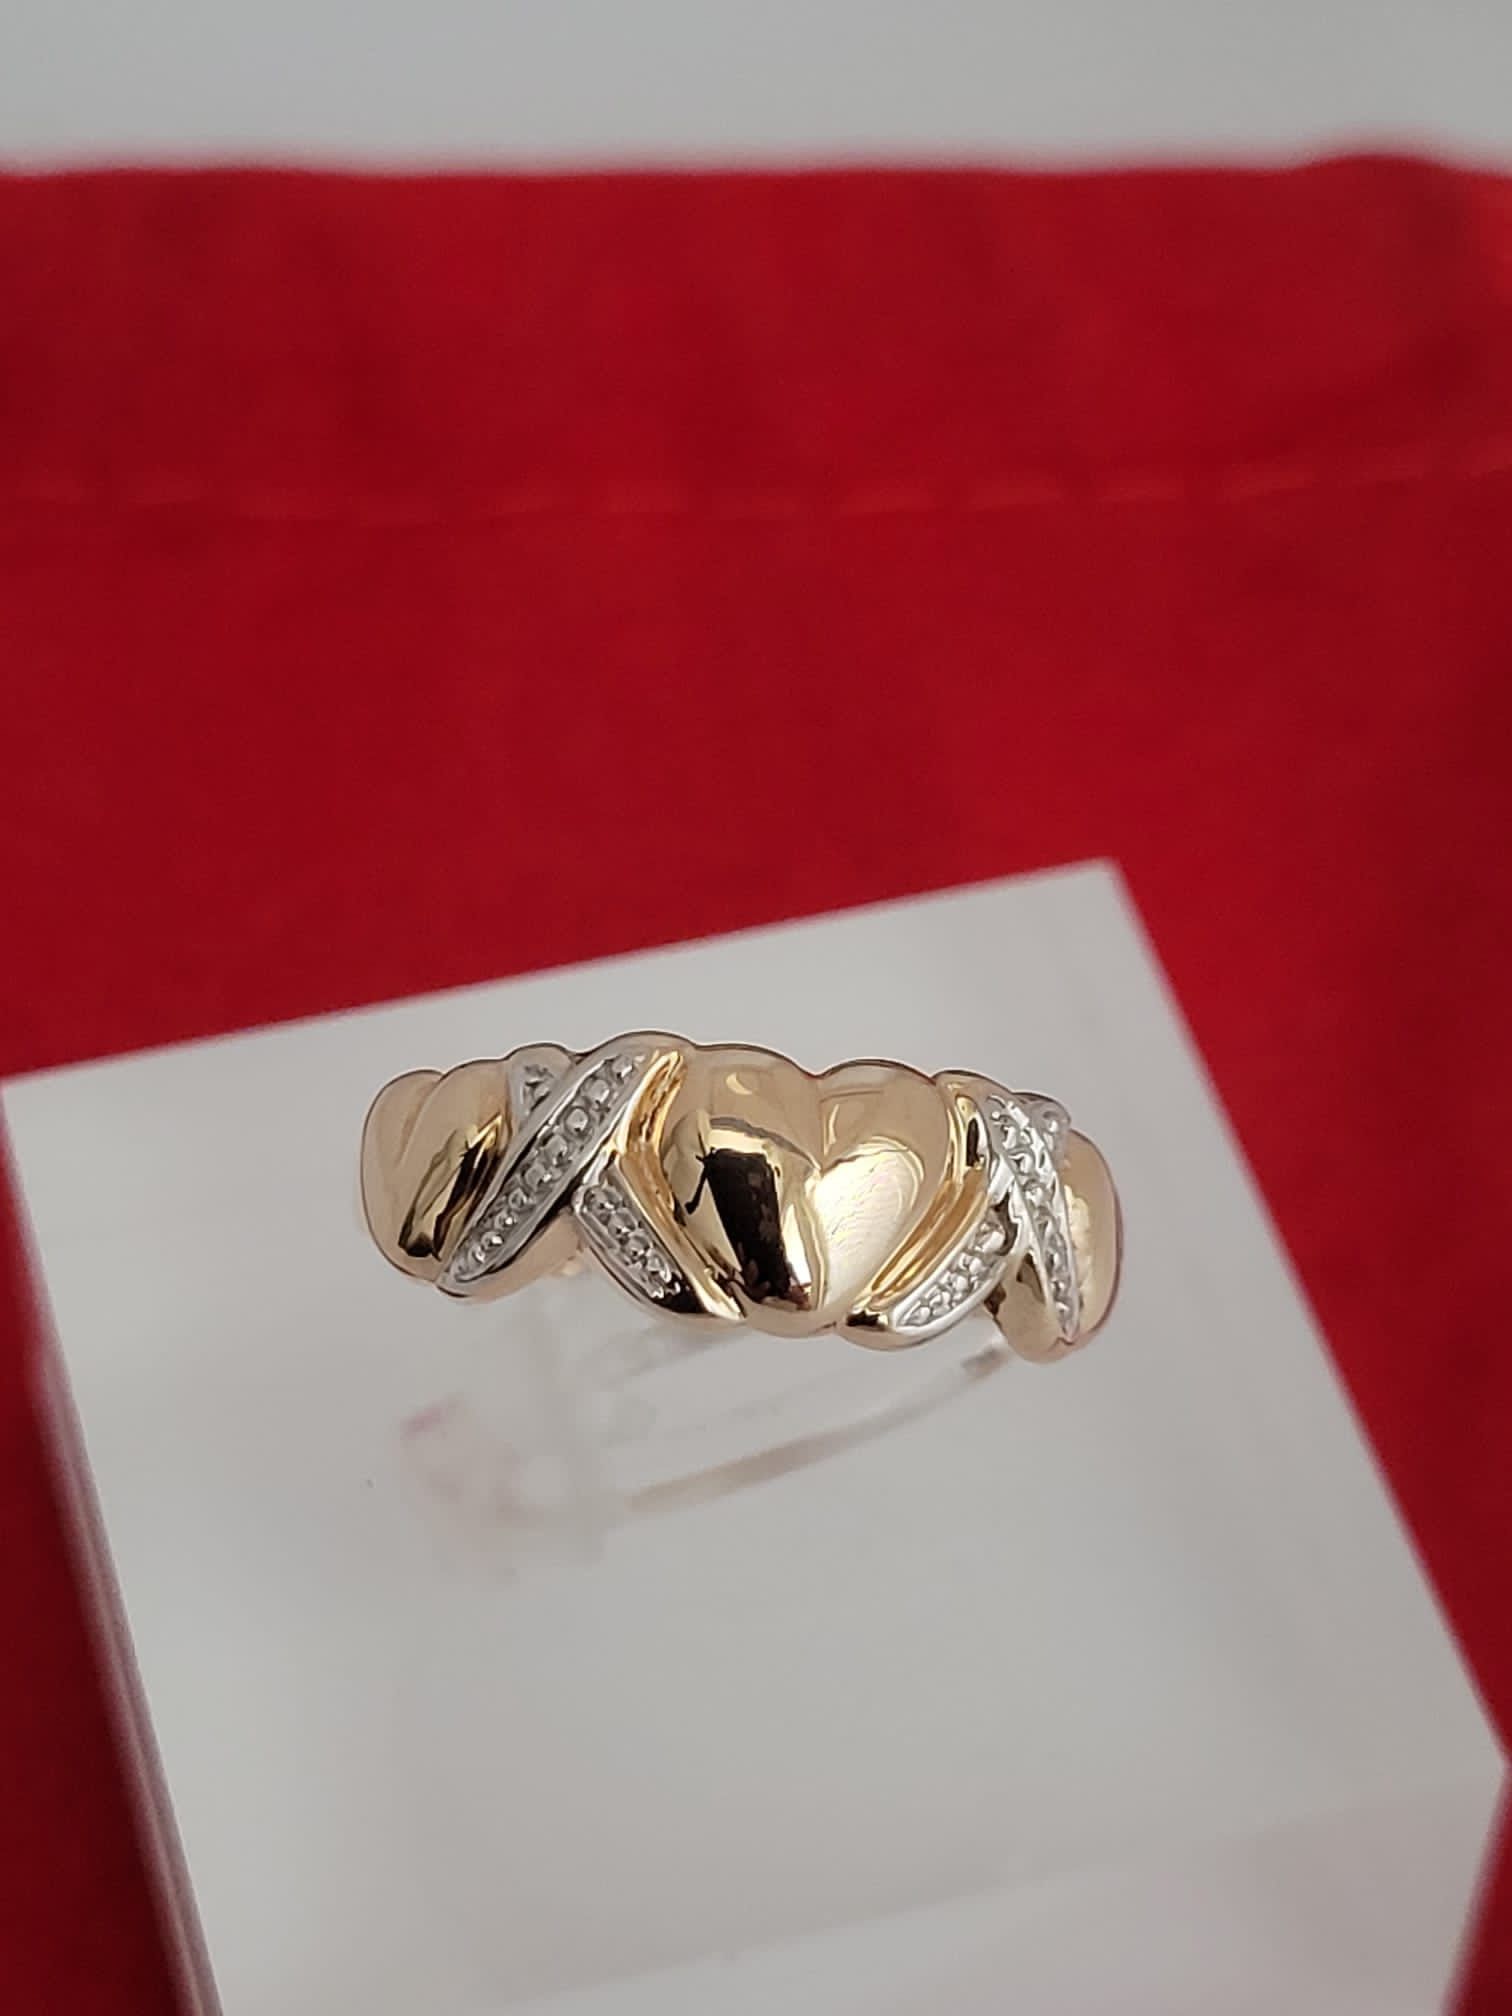 ❤️10k Size 7 Beautiful yellow gold with hearts xoxo design Ring!/Anillo de oro con corazones diseño xoxo!👌🥰🌸Post Tags: 10k 14k